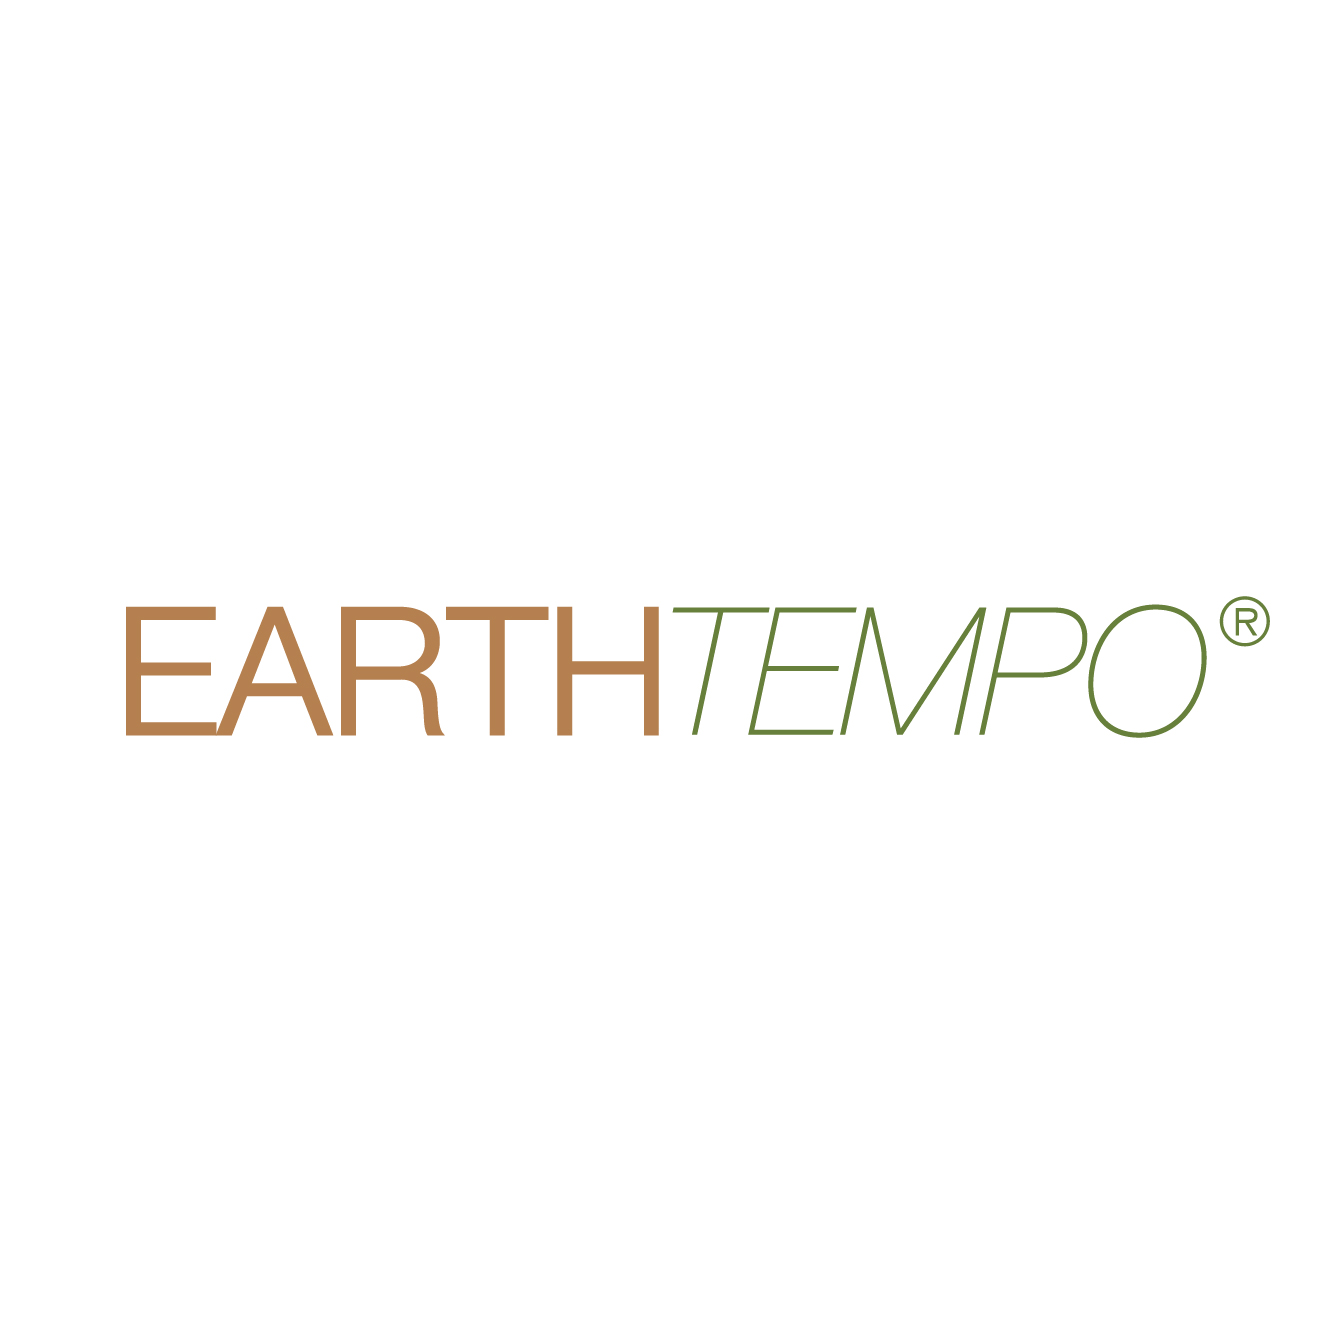 EarthTempo Hotelier Collection